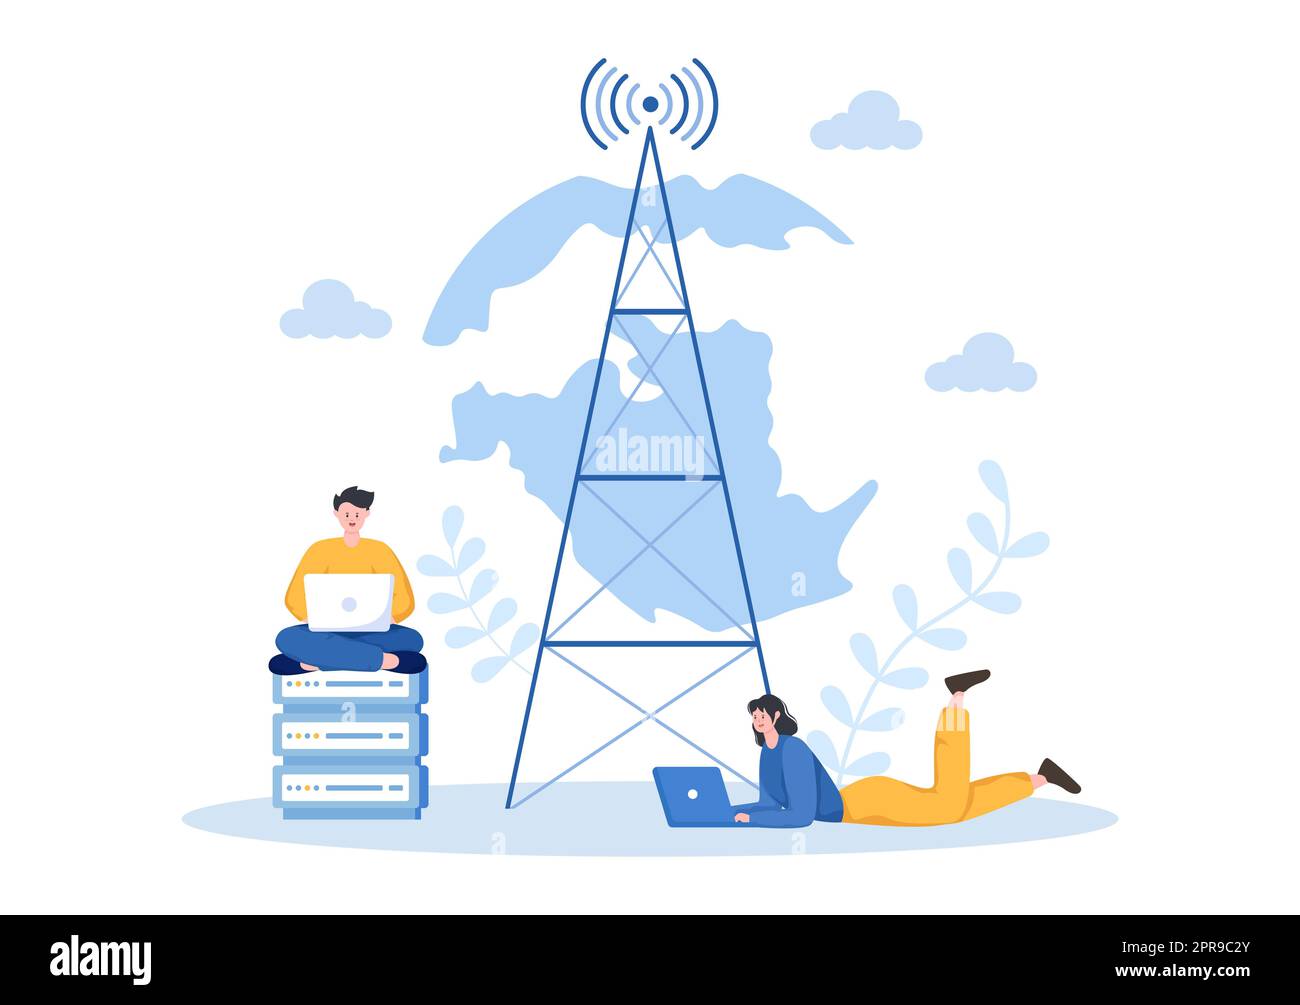 Cartoon-Illustration für ISP oder Internetdienstanbieter mit Schlüsselwörtern und Symbolen für Intranet-Zugriff, sichere Netzwerkverbindung und Datenschutz Stockfoto